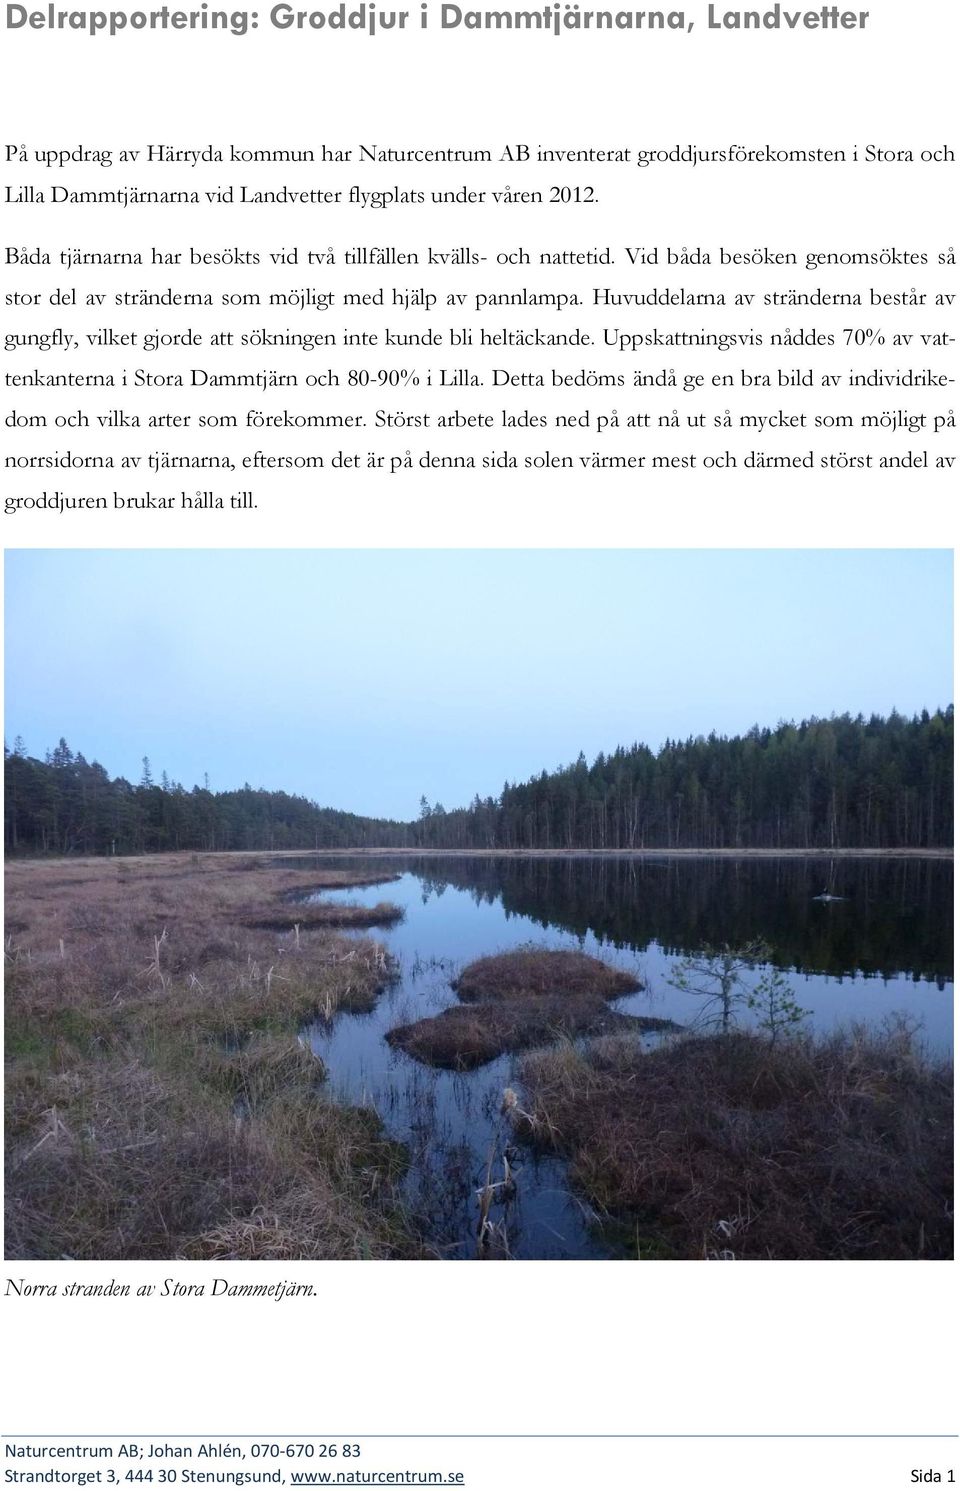 Huvuddelarna av stränderna består av gungfly, vilket gjorde att sökningen inte kunde bli heltäckande. Uppskattningsvis nåddes 70% av vattenkanterna i Stora Dammtjärn och 80-90% i Lilla.